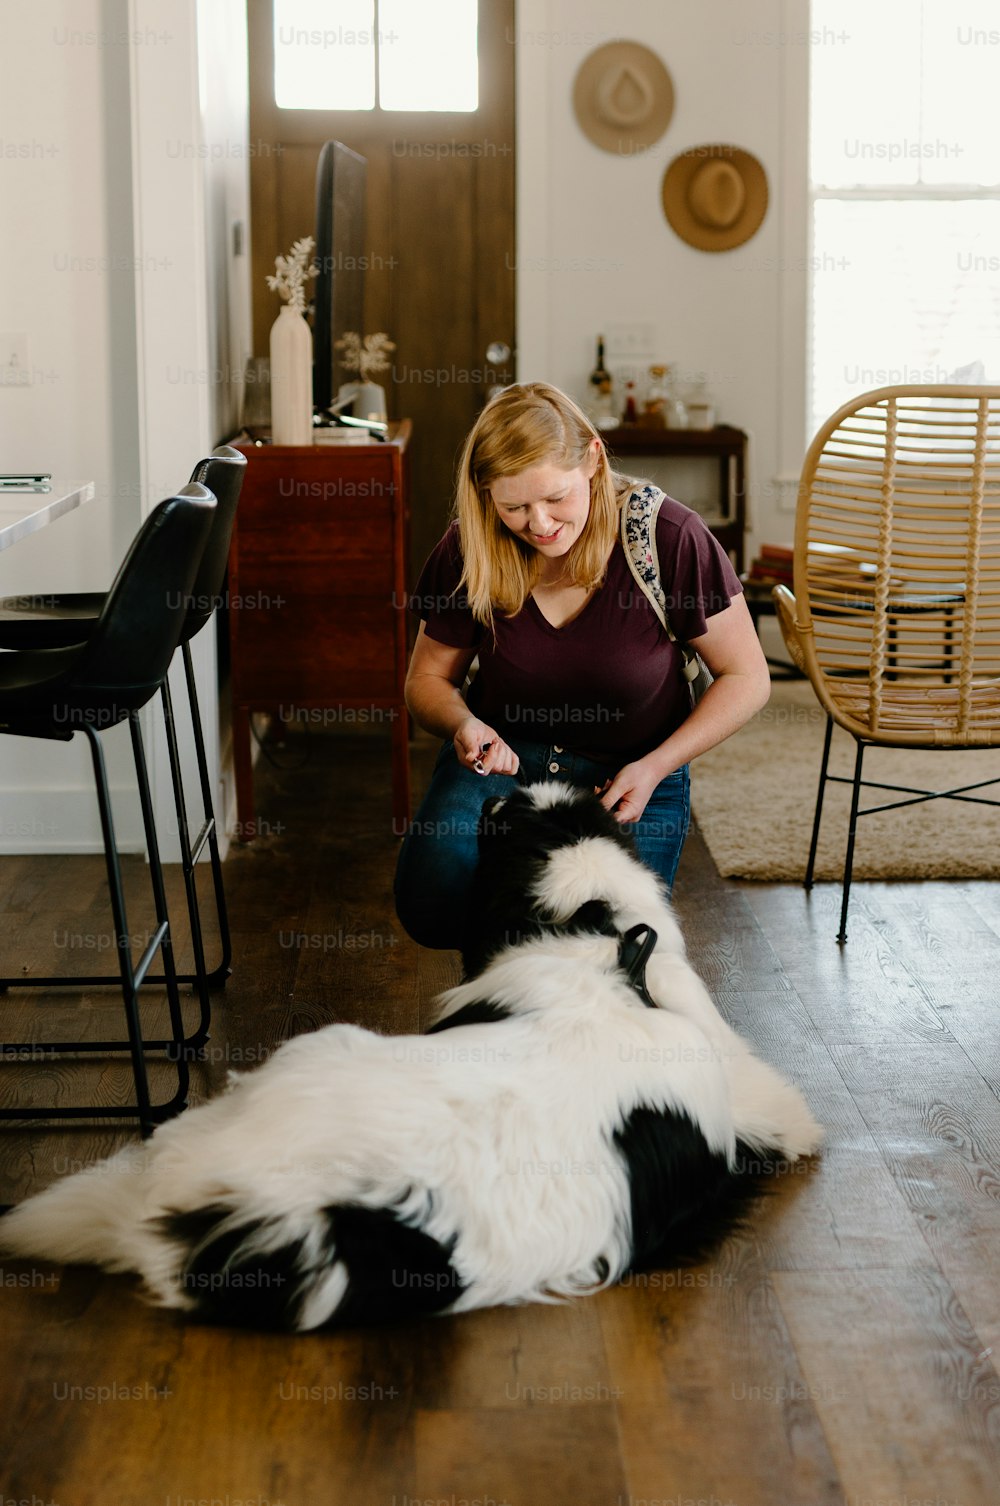 una donna seduta sul pavimento che accarezza un cane bianco e nero